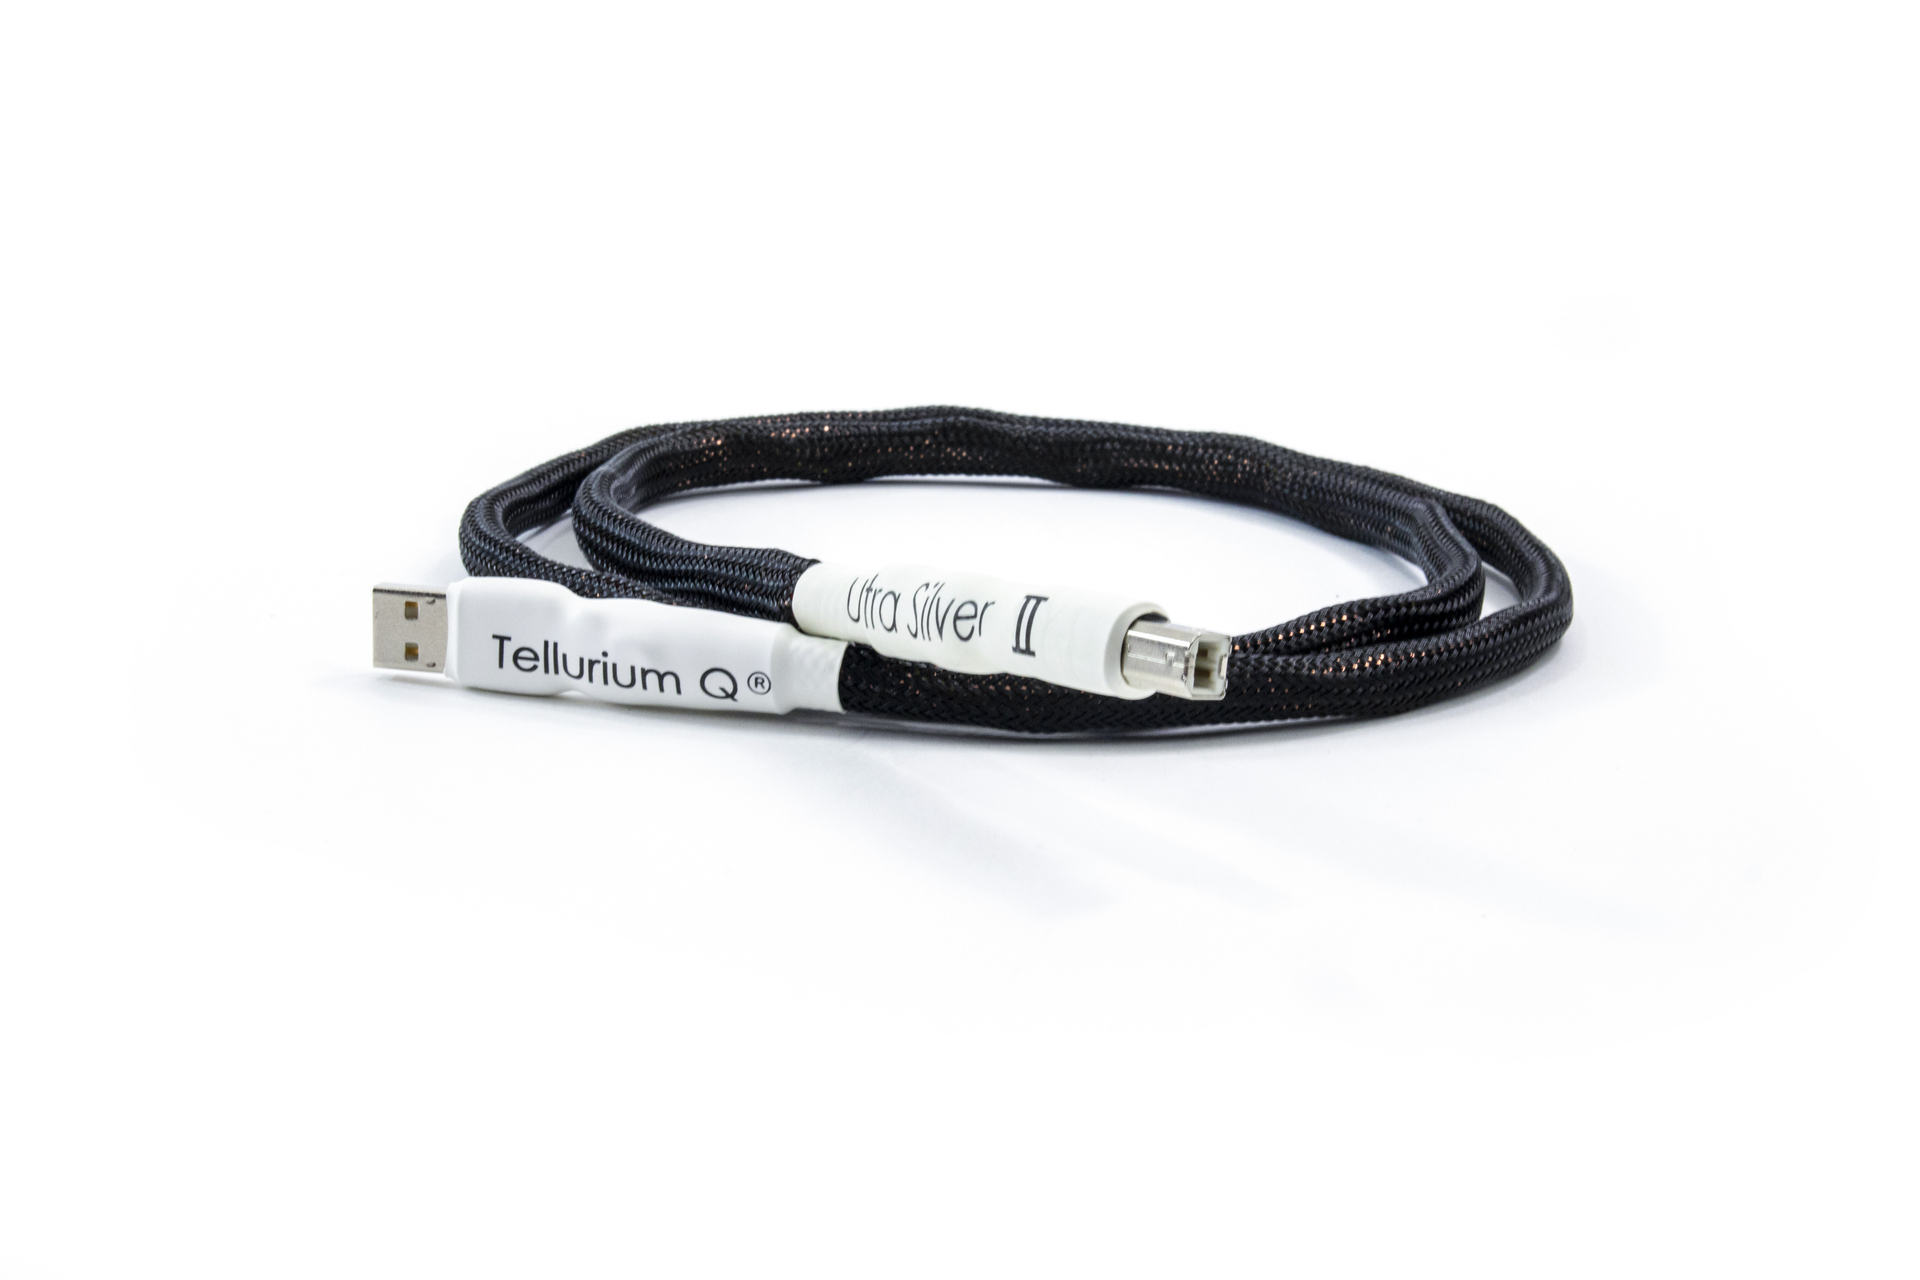 Tellurium Q | Ultra Silver II | USB